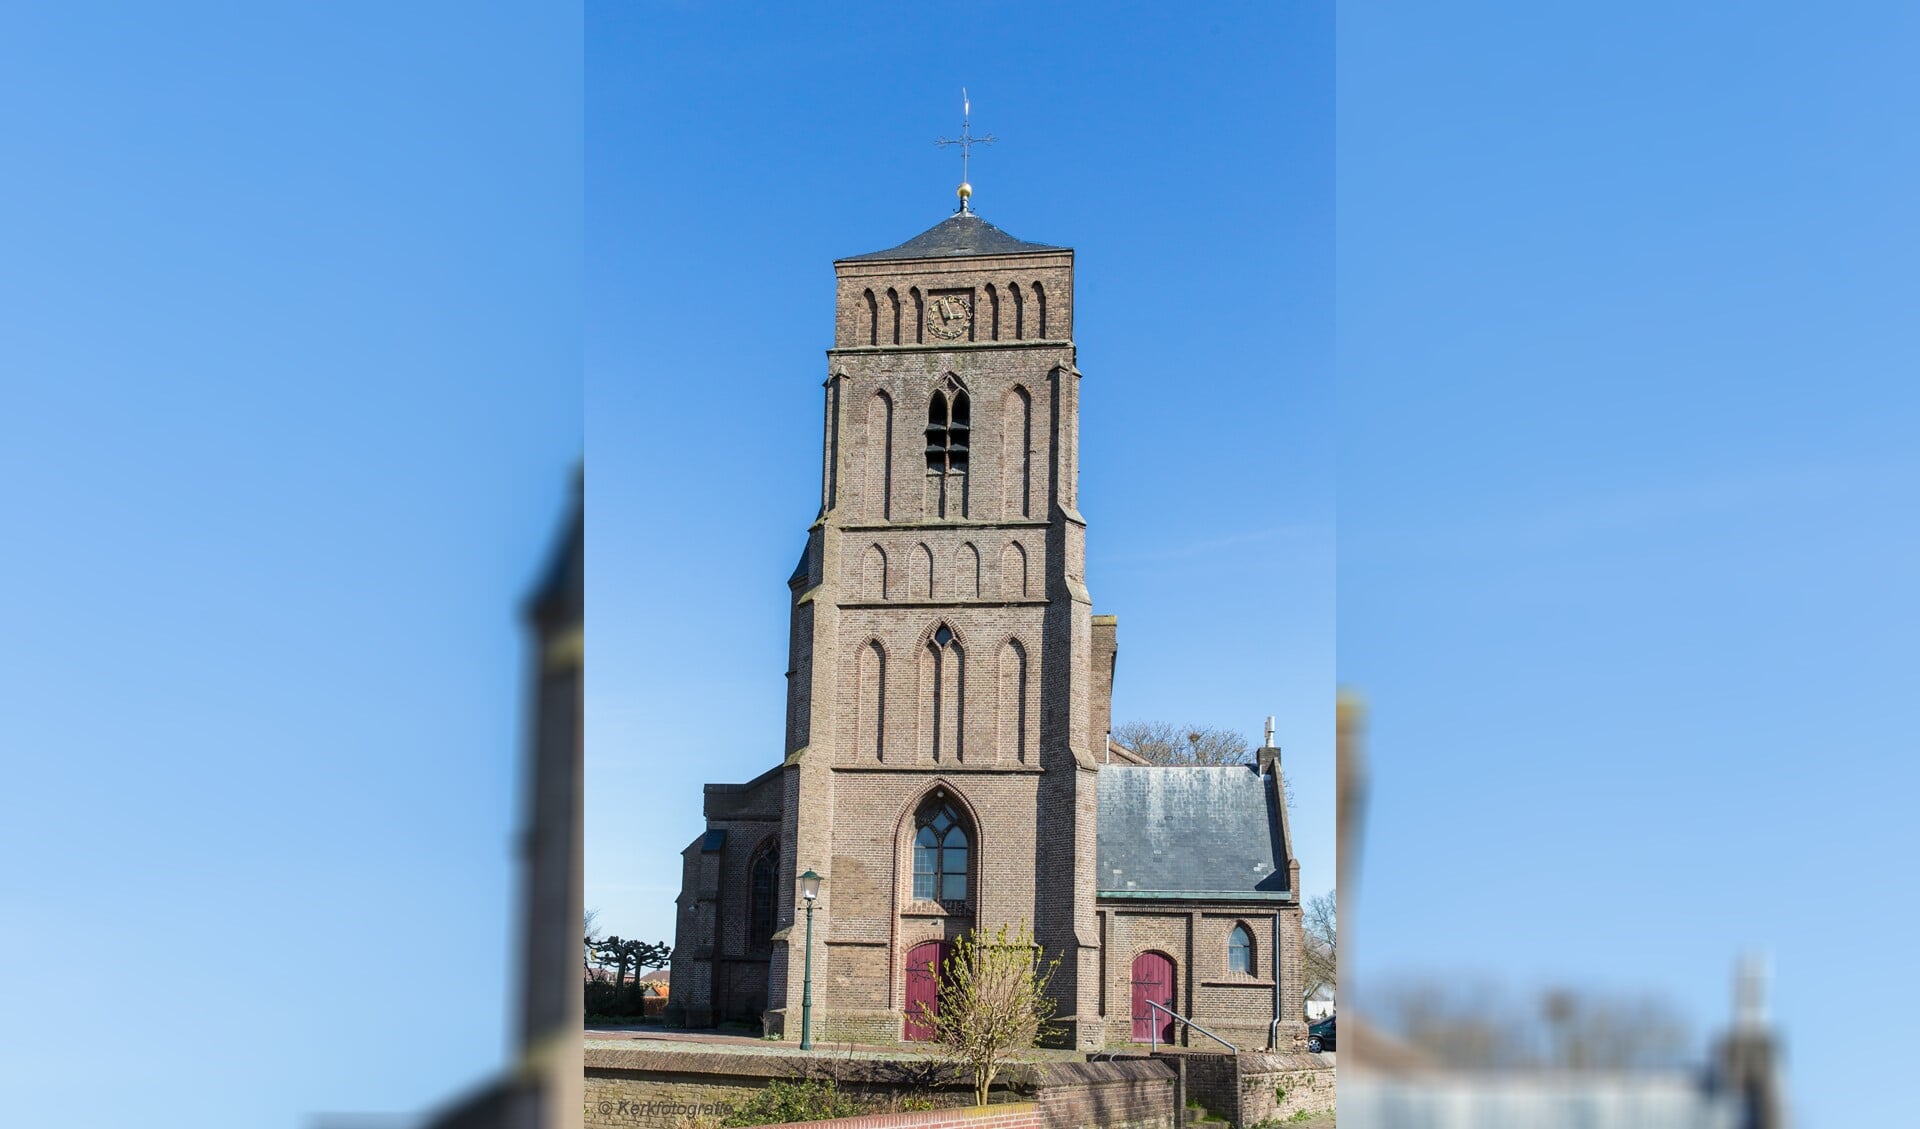 De kerk in Pannerden